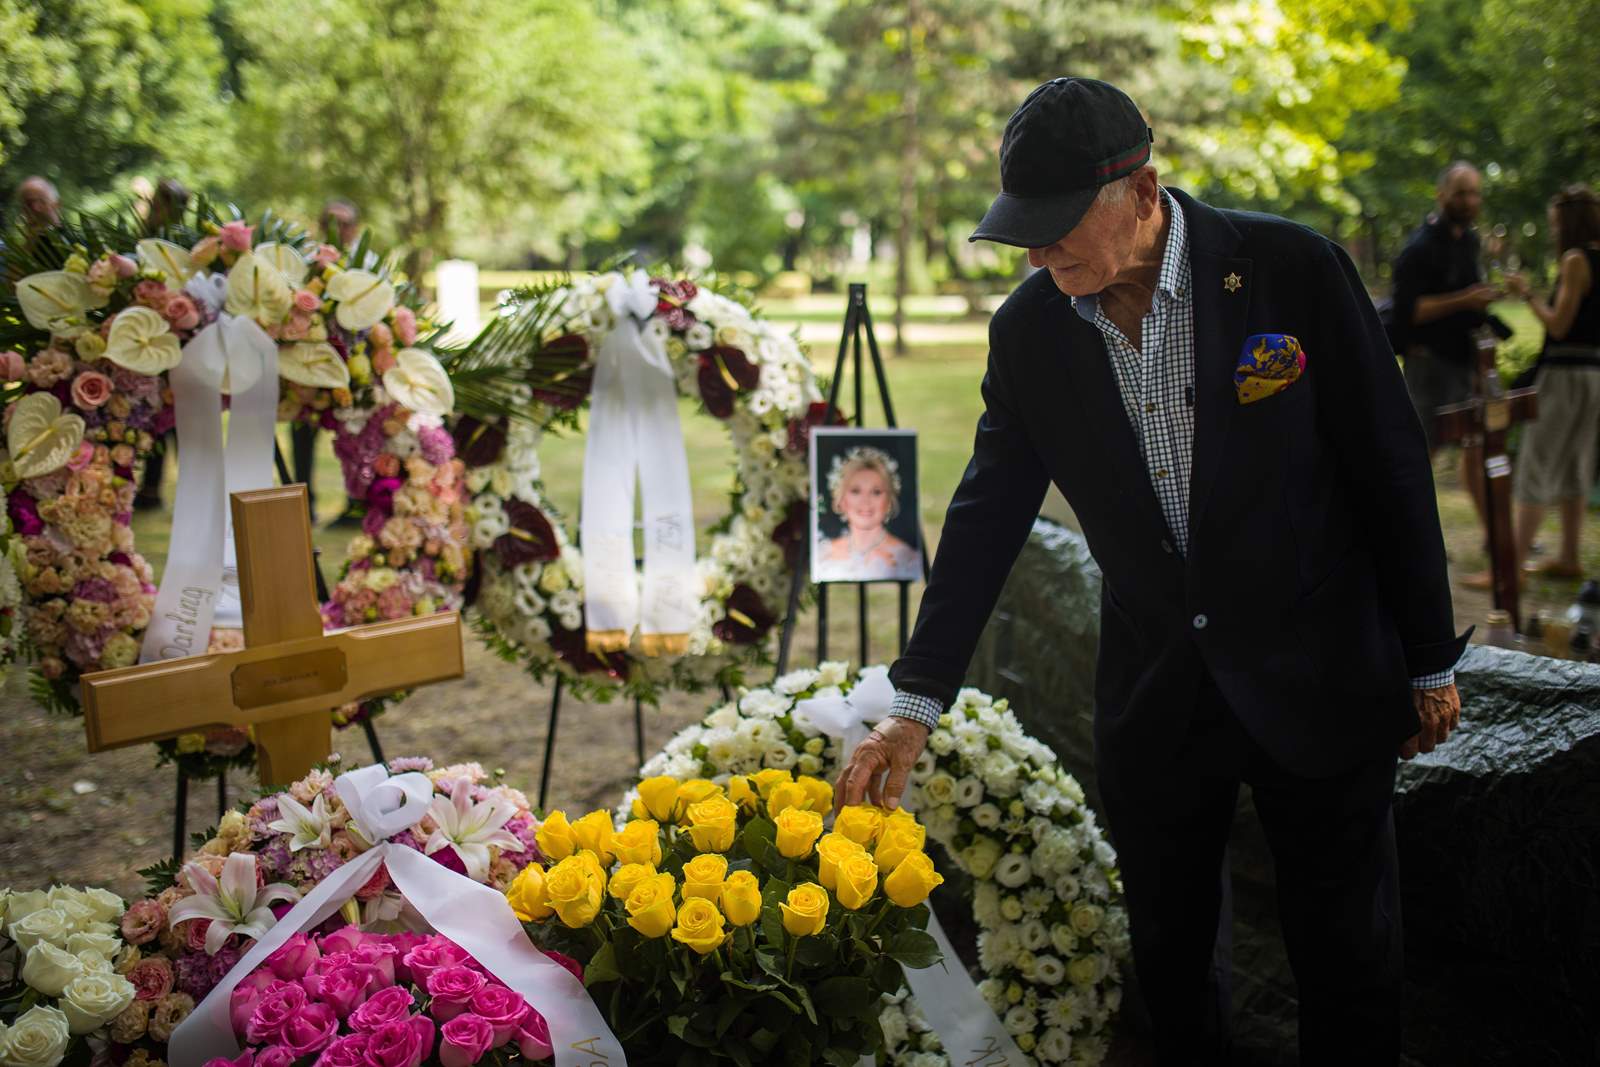 ザザ・ガボールの遺灰は火曜日、ブダペストのフィウメイ通りの墓地に埋葬され、彼女の死からほぼ XNUMX 年が経過した。